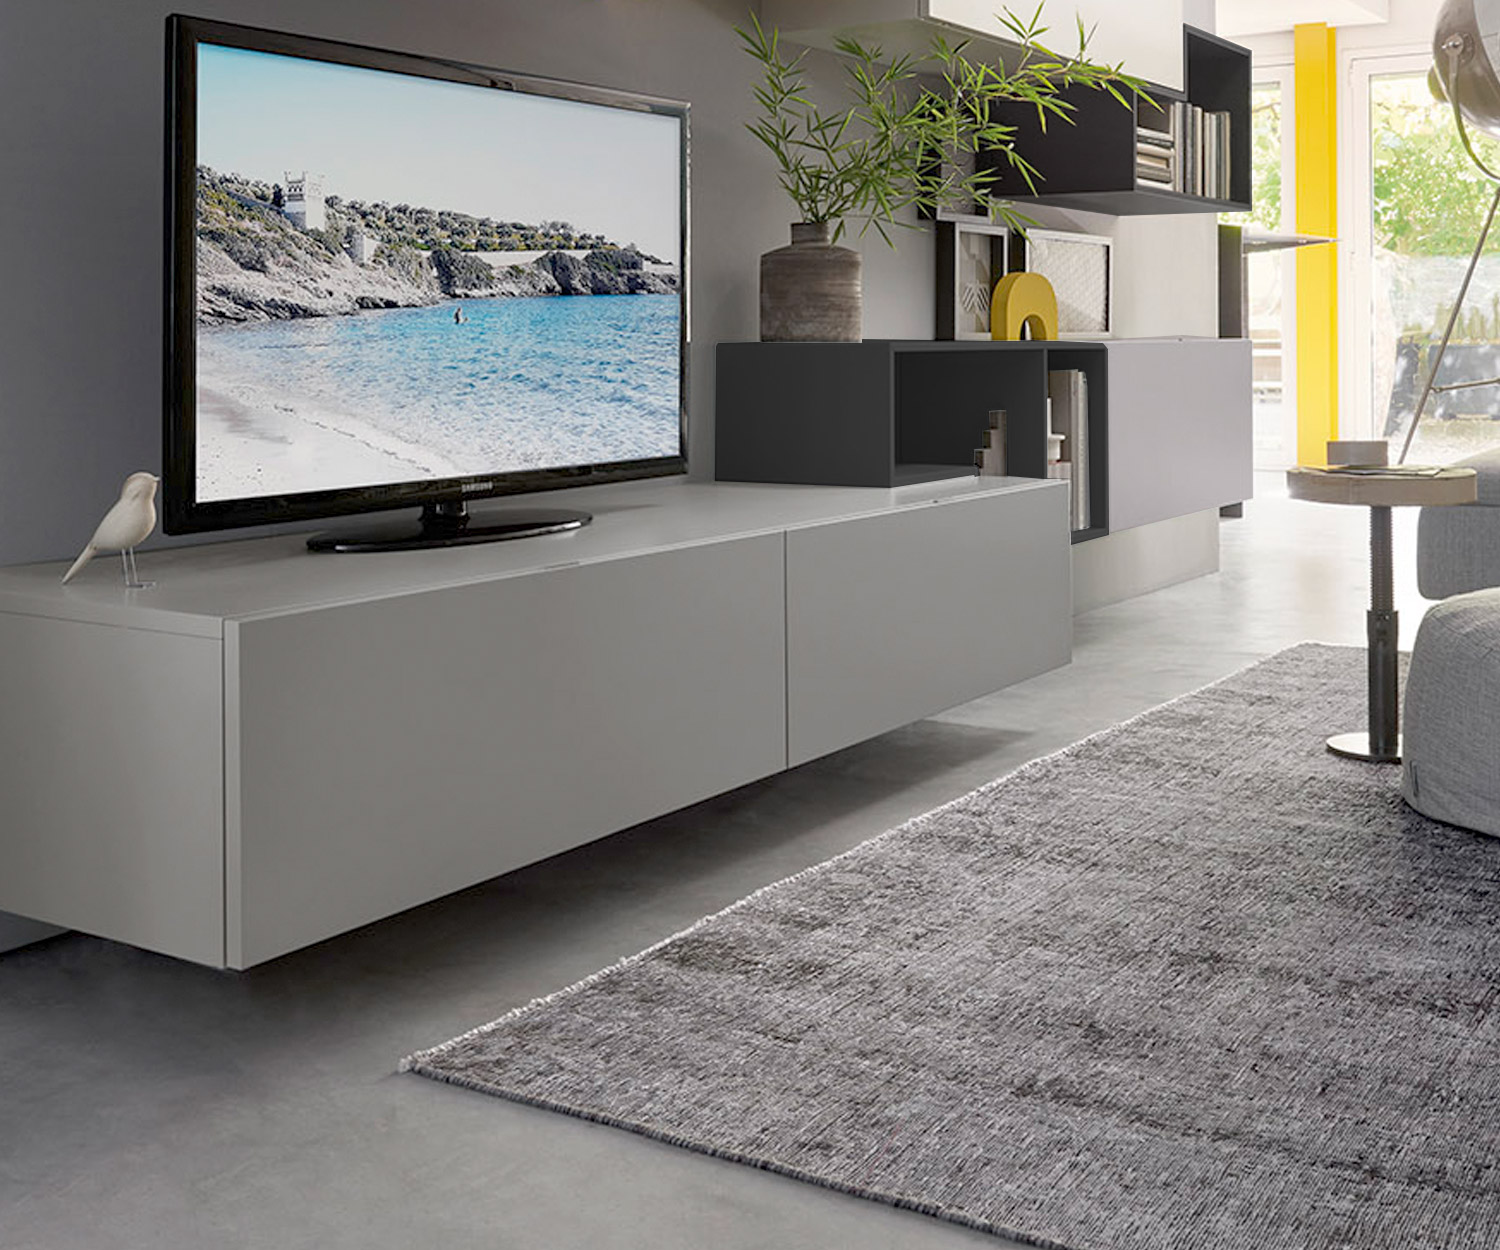 Tetris Design Wohnwand C19 mit TV Design Lowboard in grauer Mattlackierung